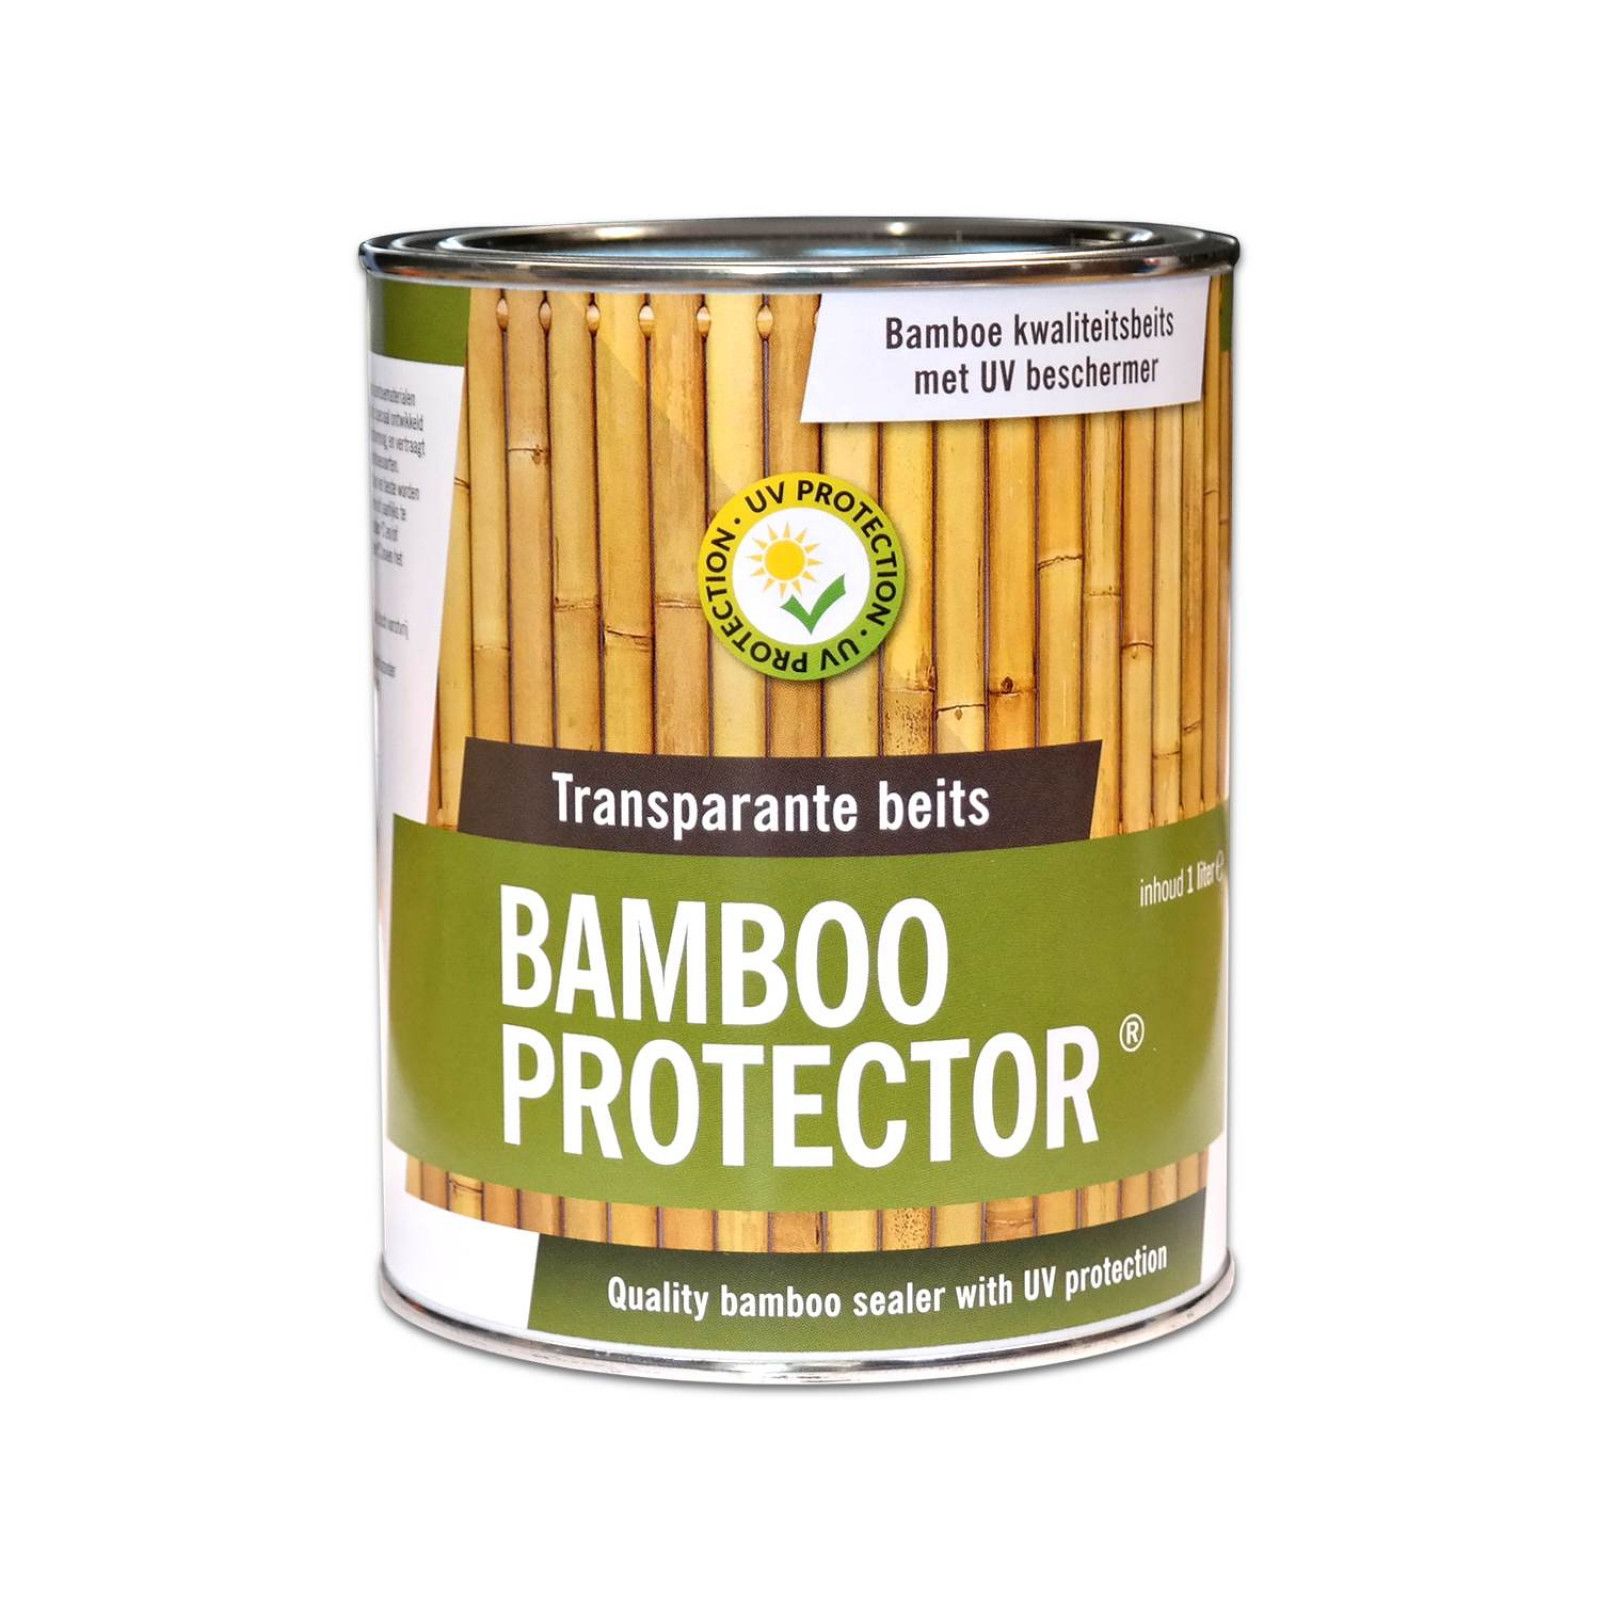 De Bamboe protector